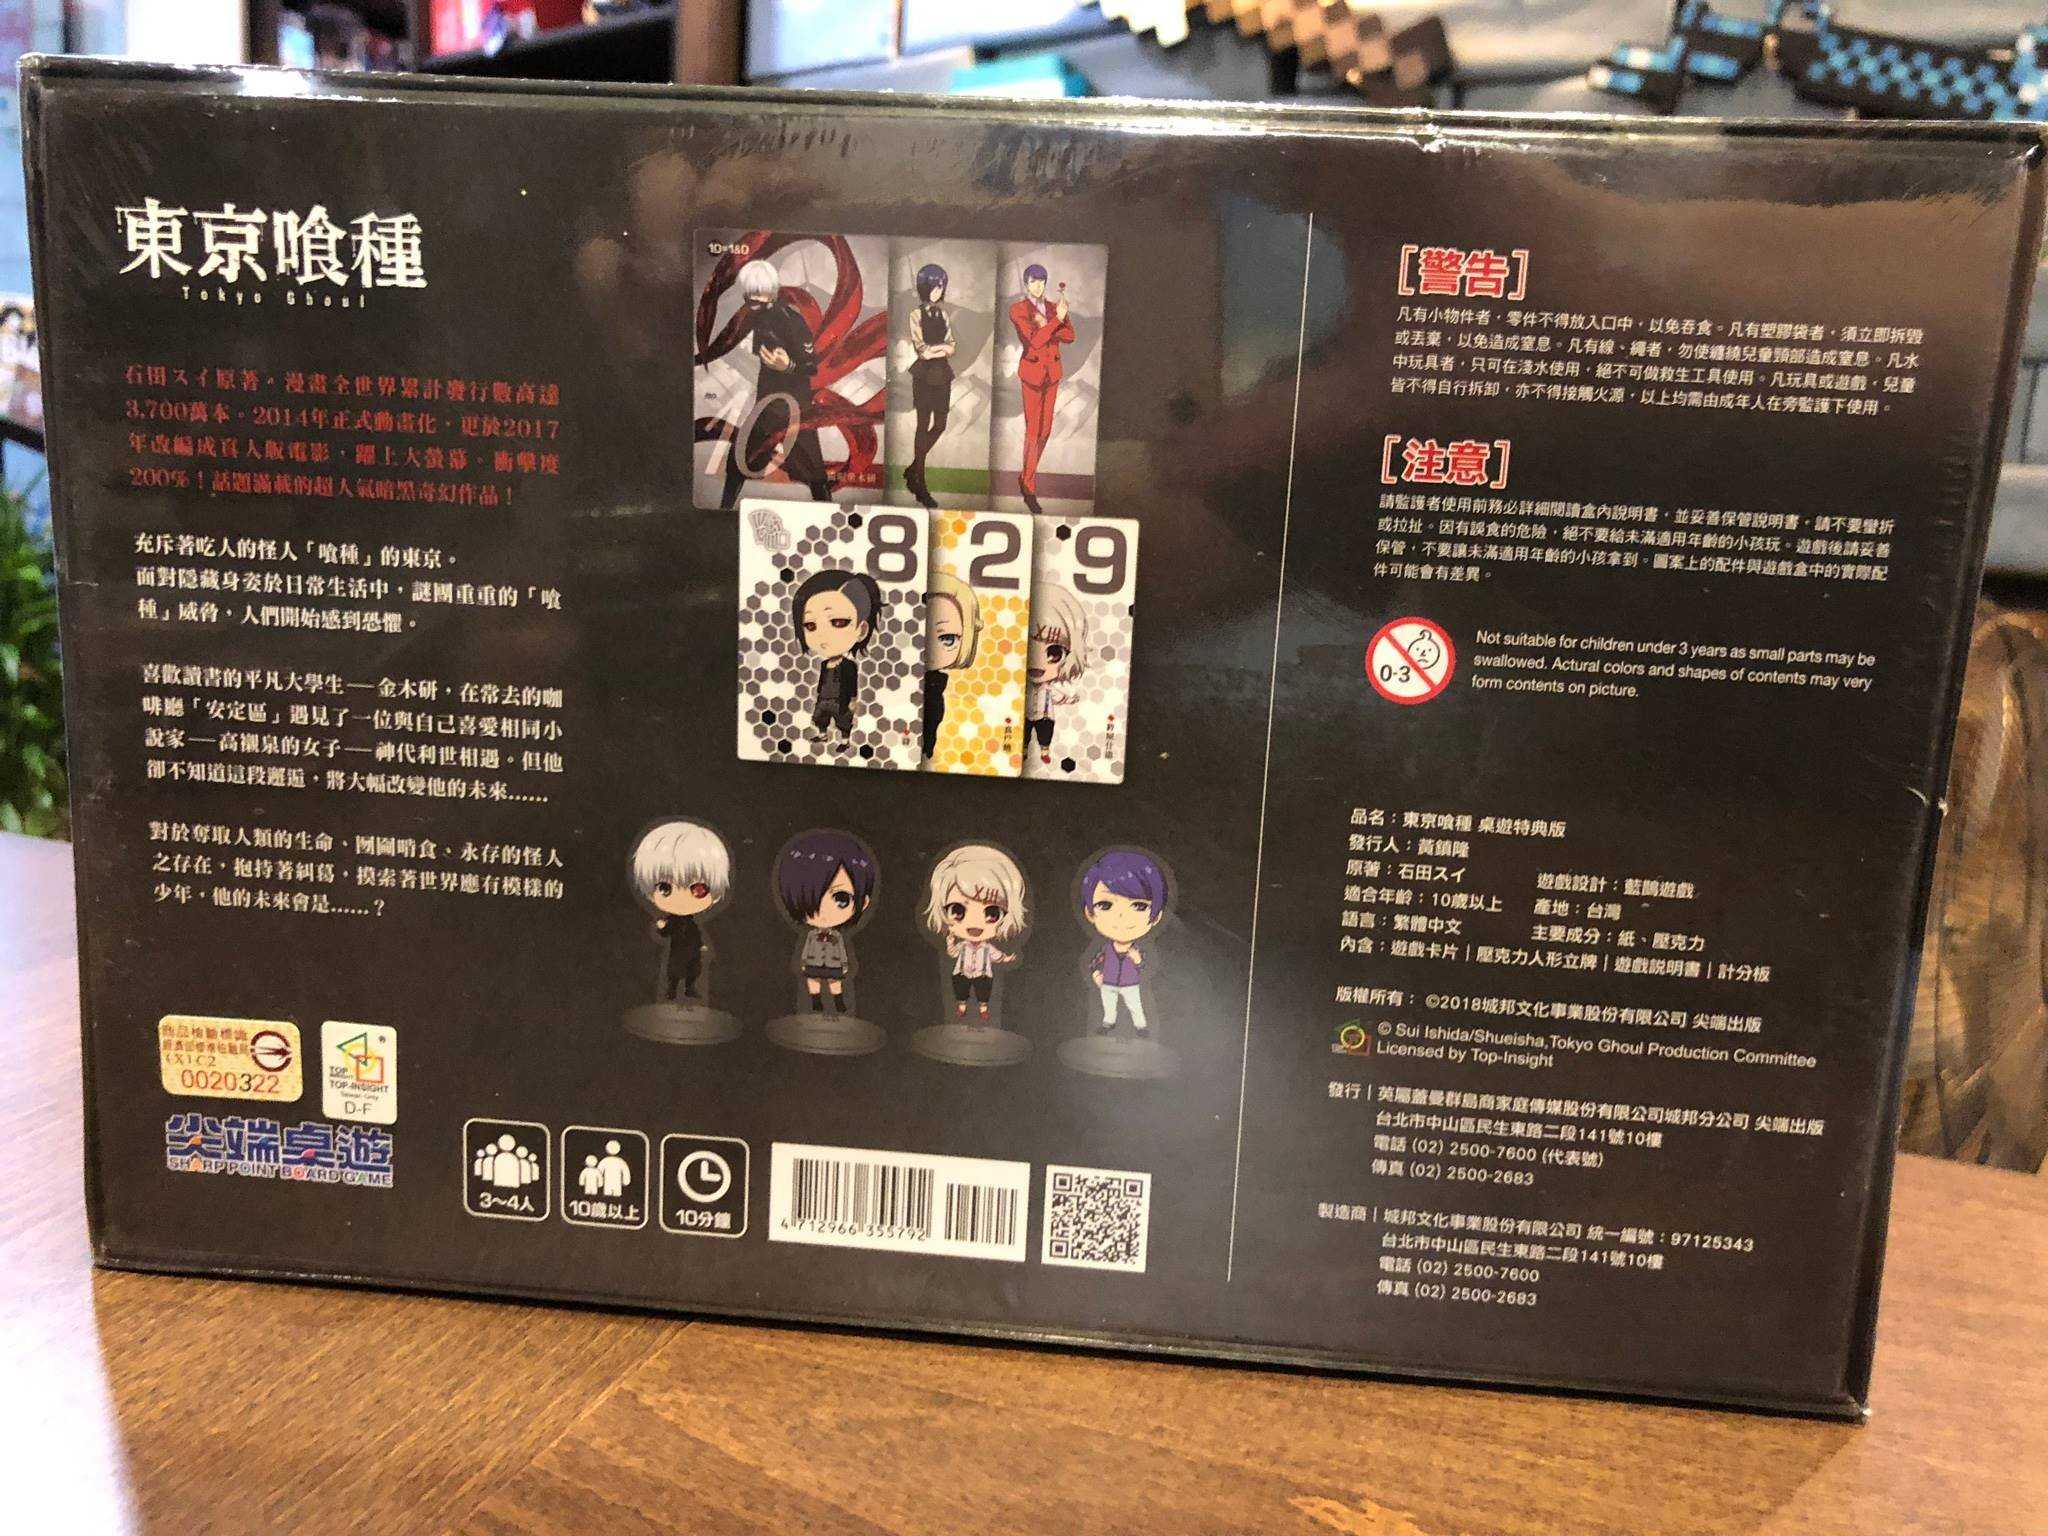 【桌遊侍】東京喰種 桌遊特典版 Tokyo Ghoul 繁體中文版 《免運.再送充足牌套》策略桌遊